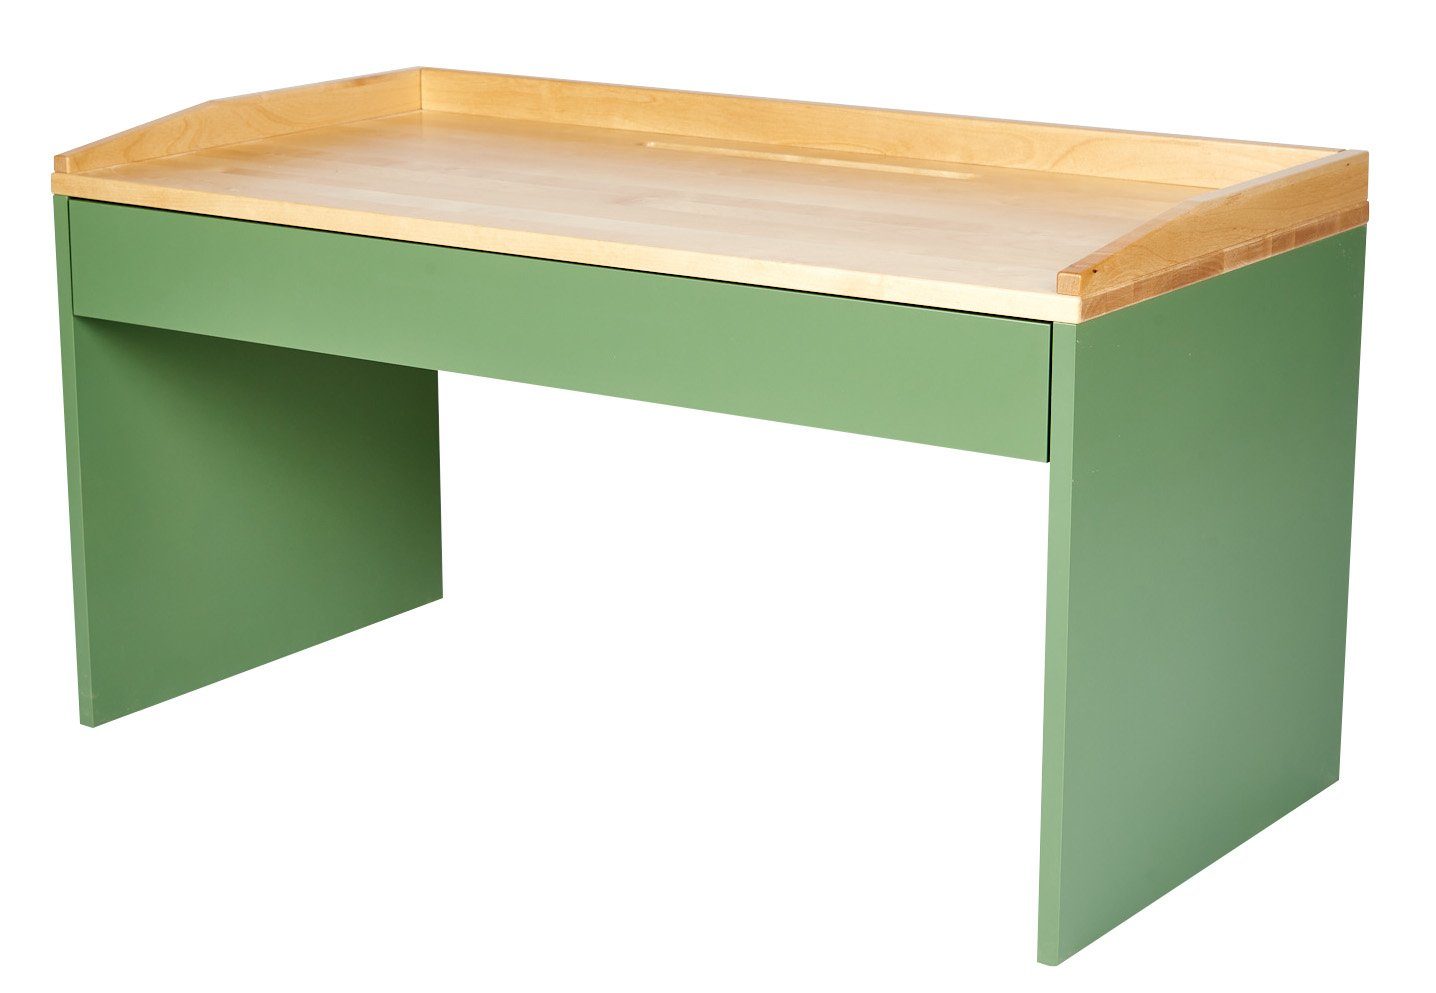 kundler home Kinderschreibtisch Spieltisch, Kindertisch, Schreibtisch für Kinder mit Schublade Matcha Grün